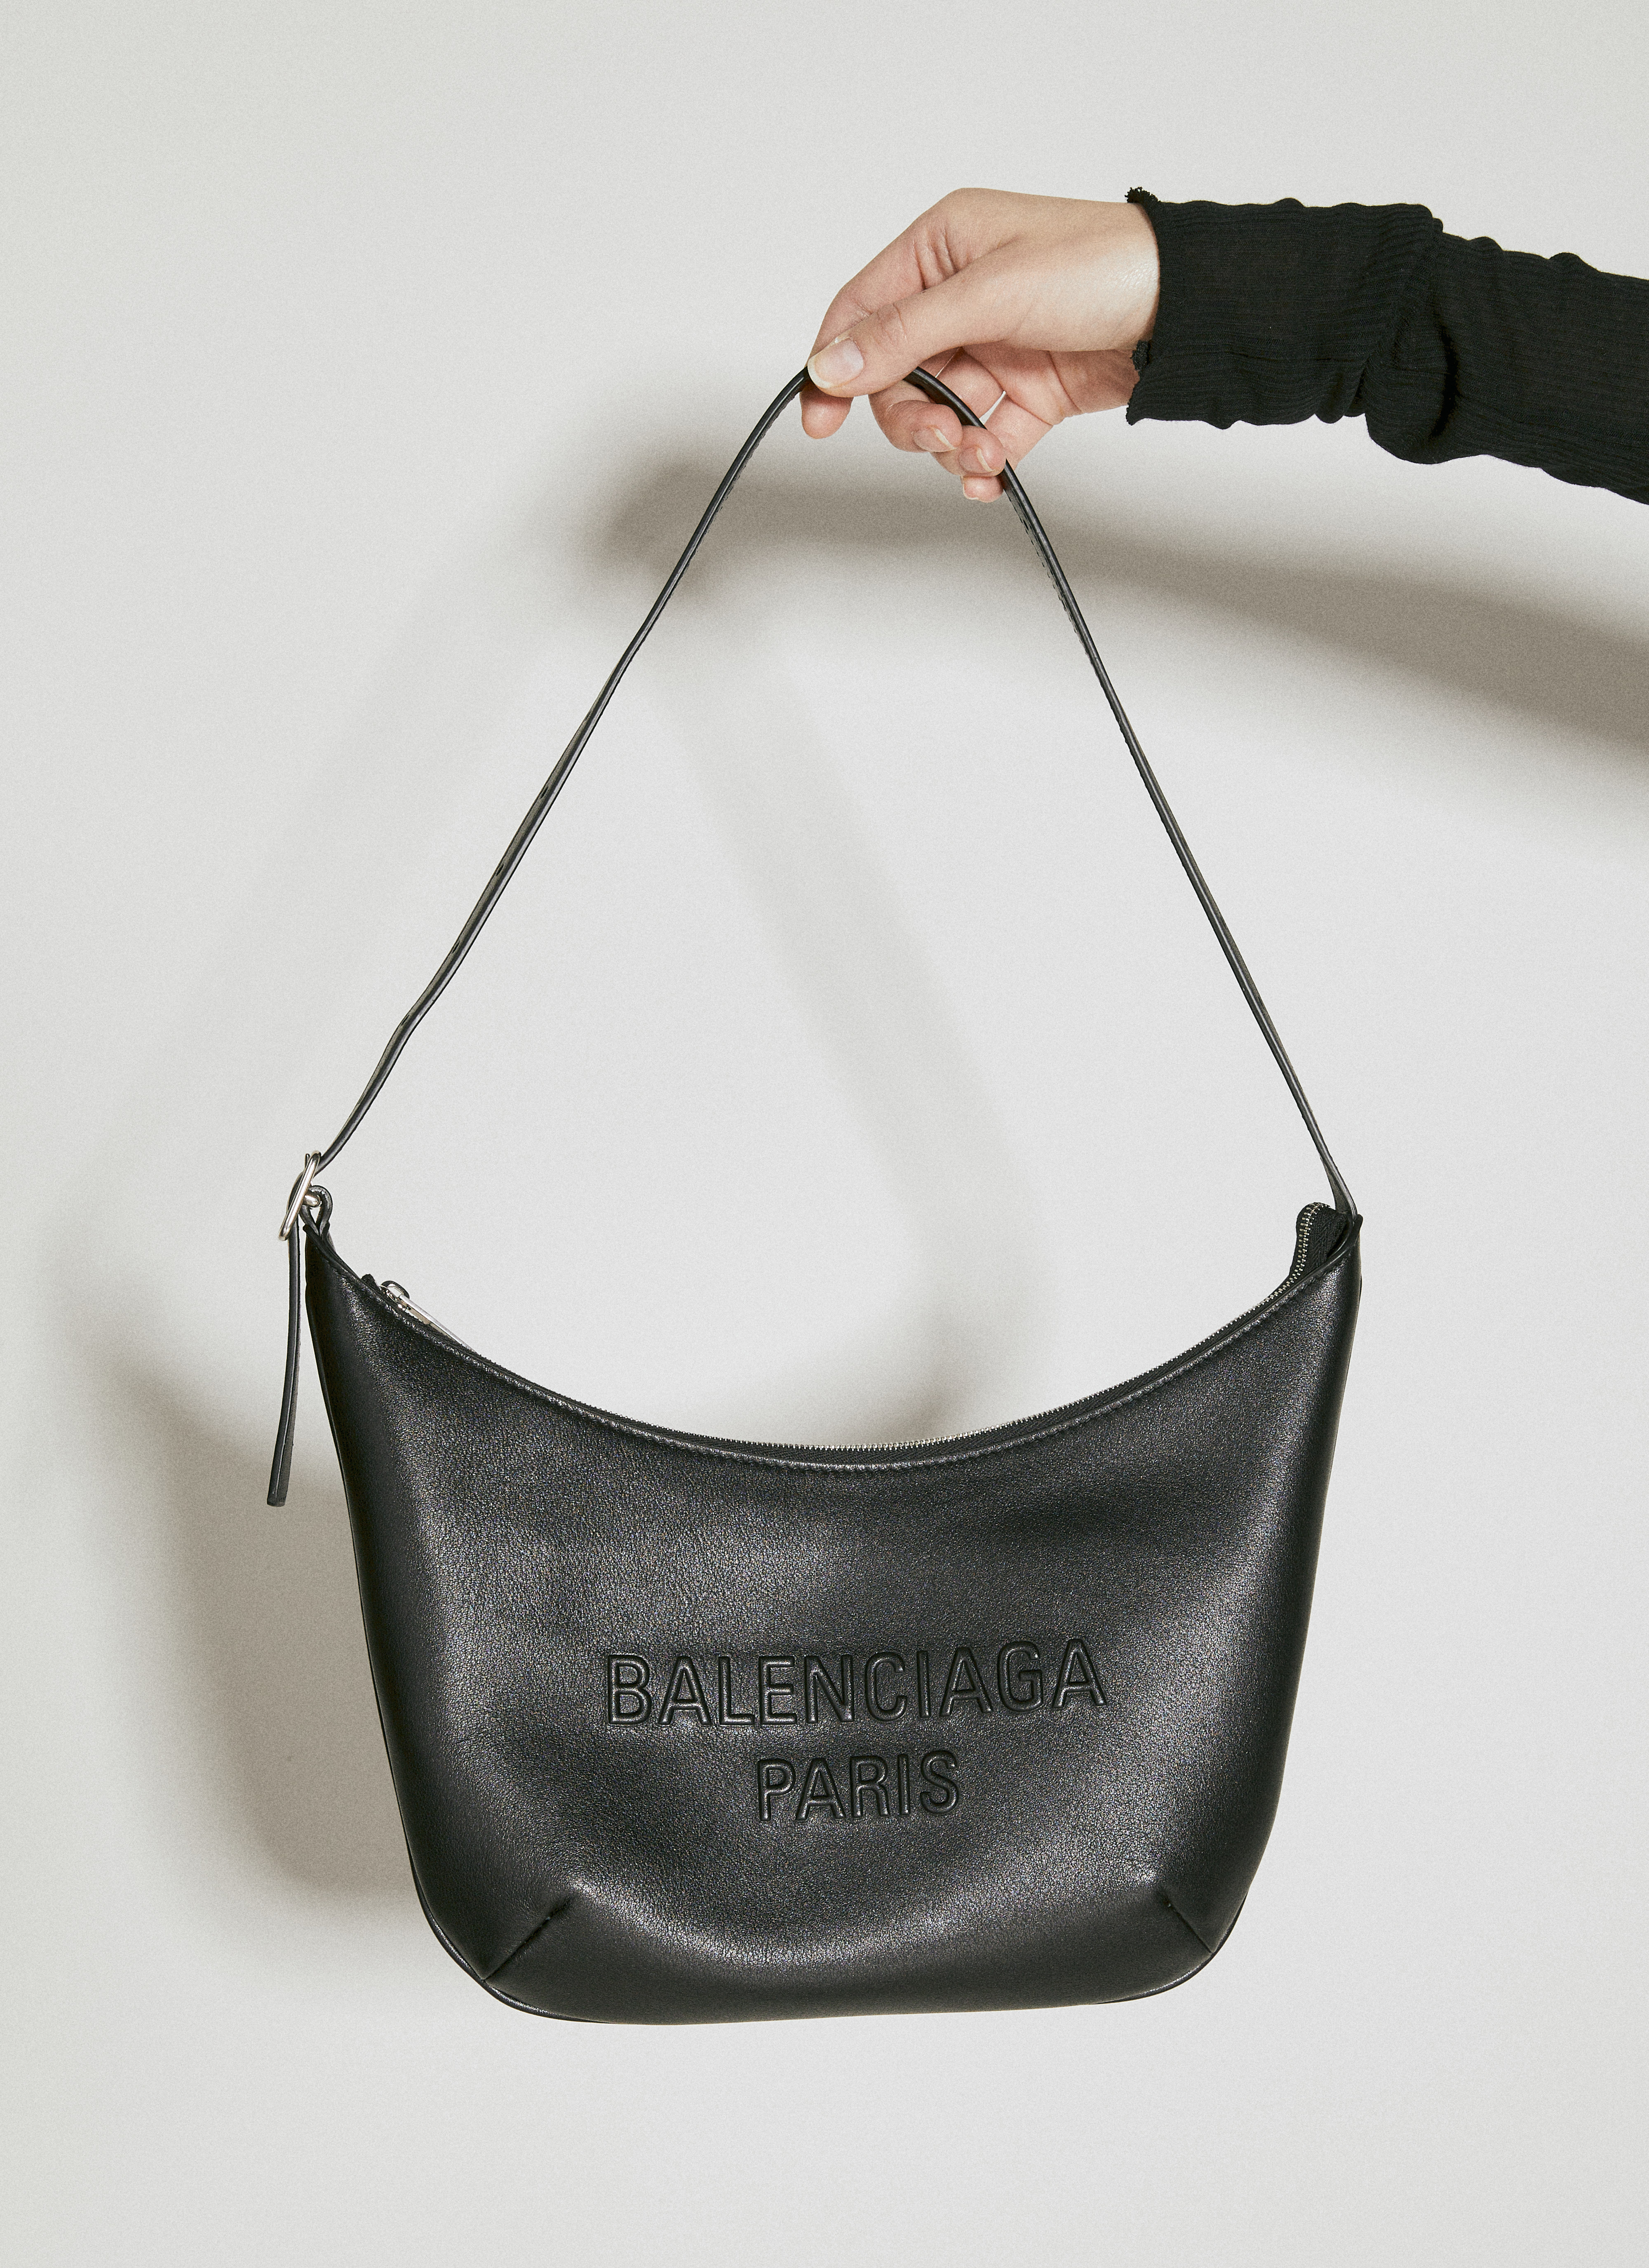 EUROLINE Vintage Quilted Black Purse Hand Shoulder Bag Women's Black Zipper  | eBay